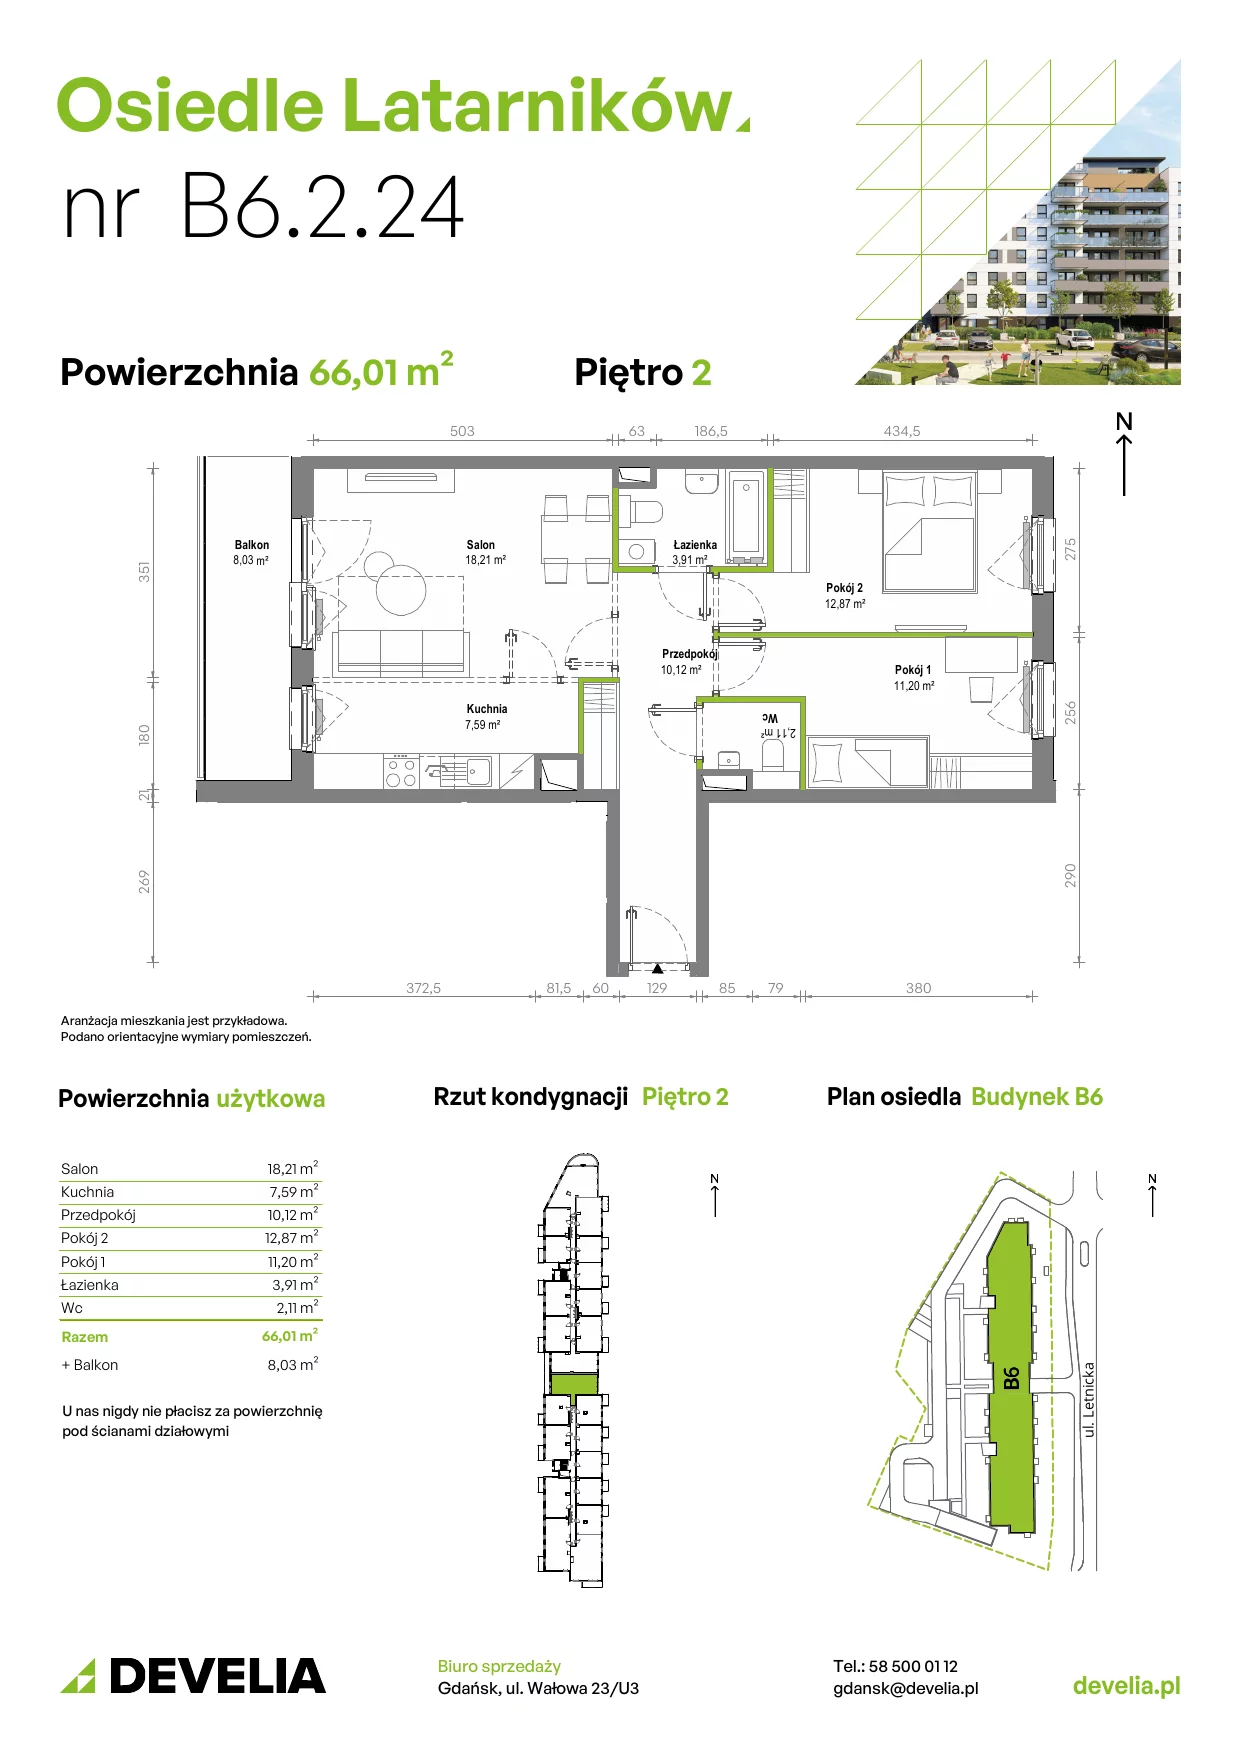 Mieszkanie 65,87 m², piętro 2, oferta nr B6.2.024, Osiedle Latarników, Gdańsk, Letnica, ul. Letnicka 1